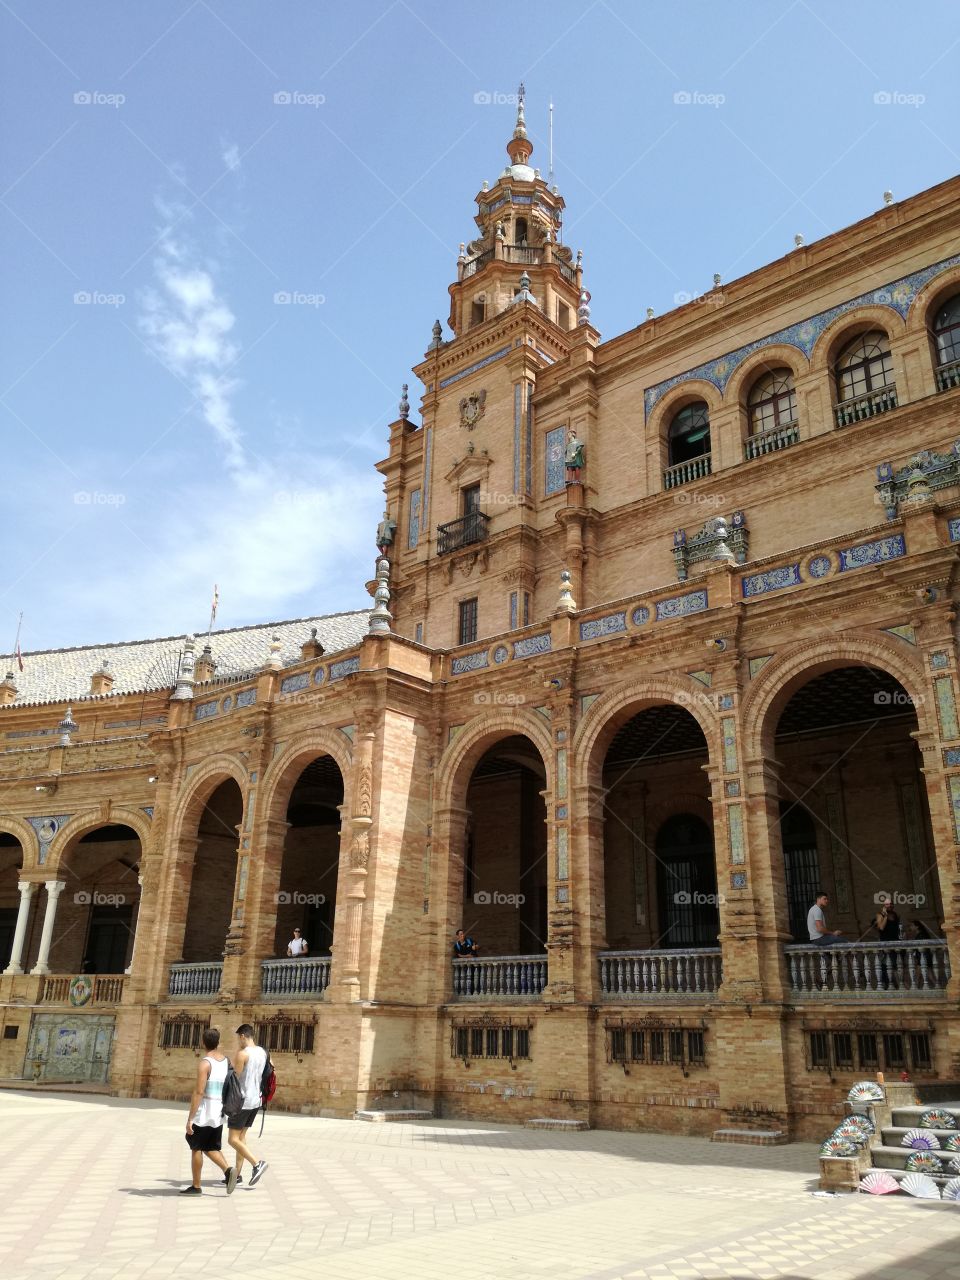 Seville spain architecture